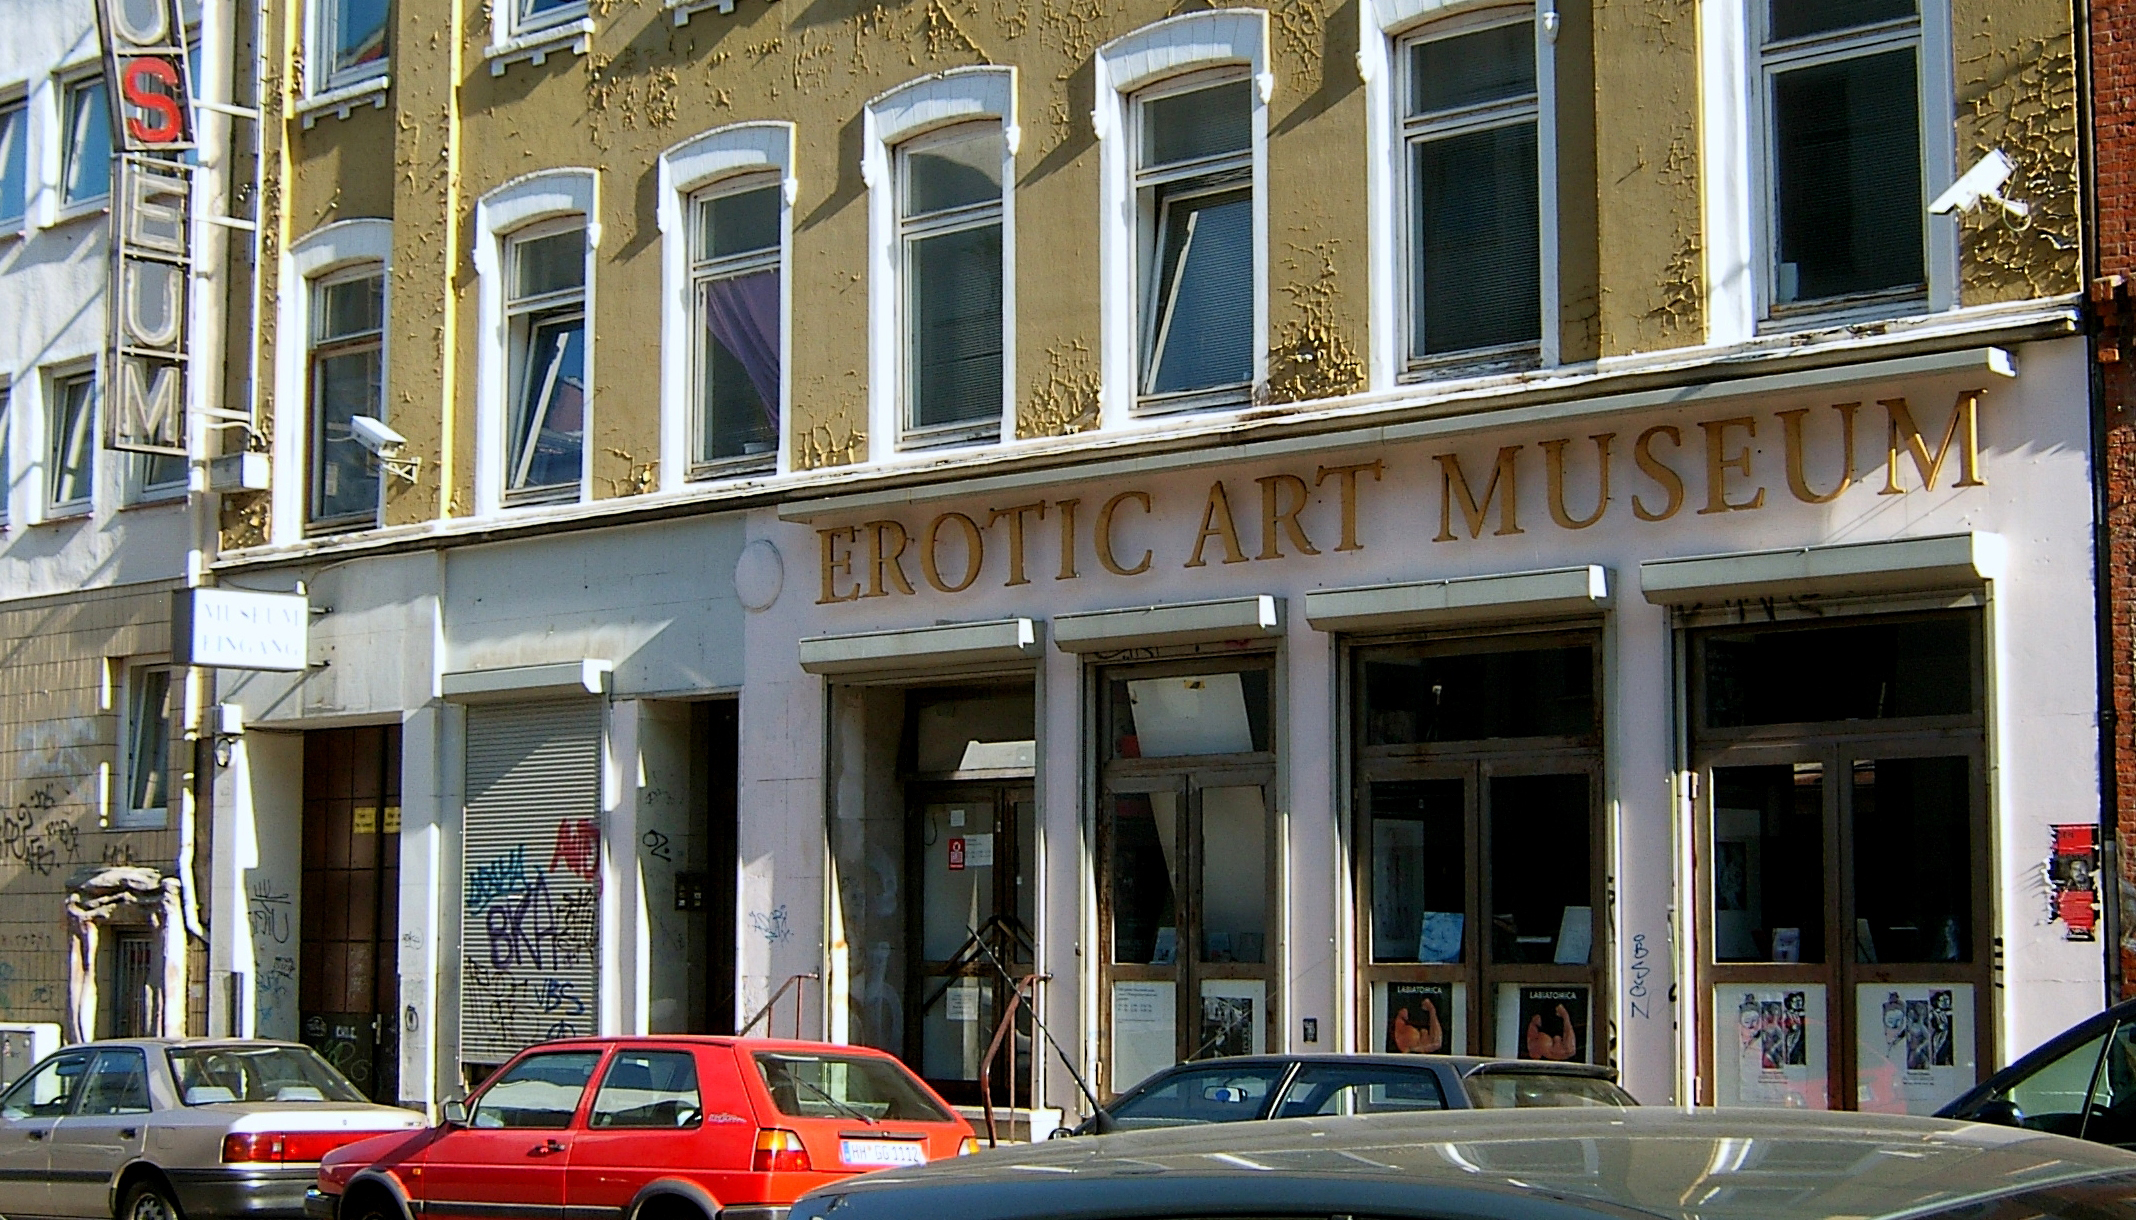 Erotic Art Museum „Hamburg Erotic Art Museum“ von 